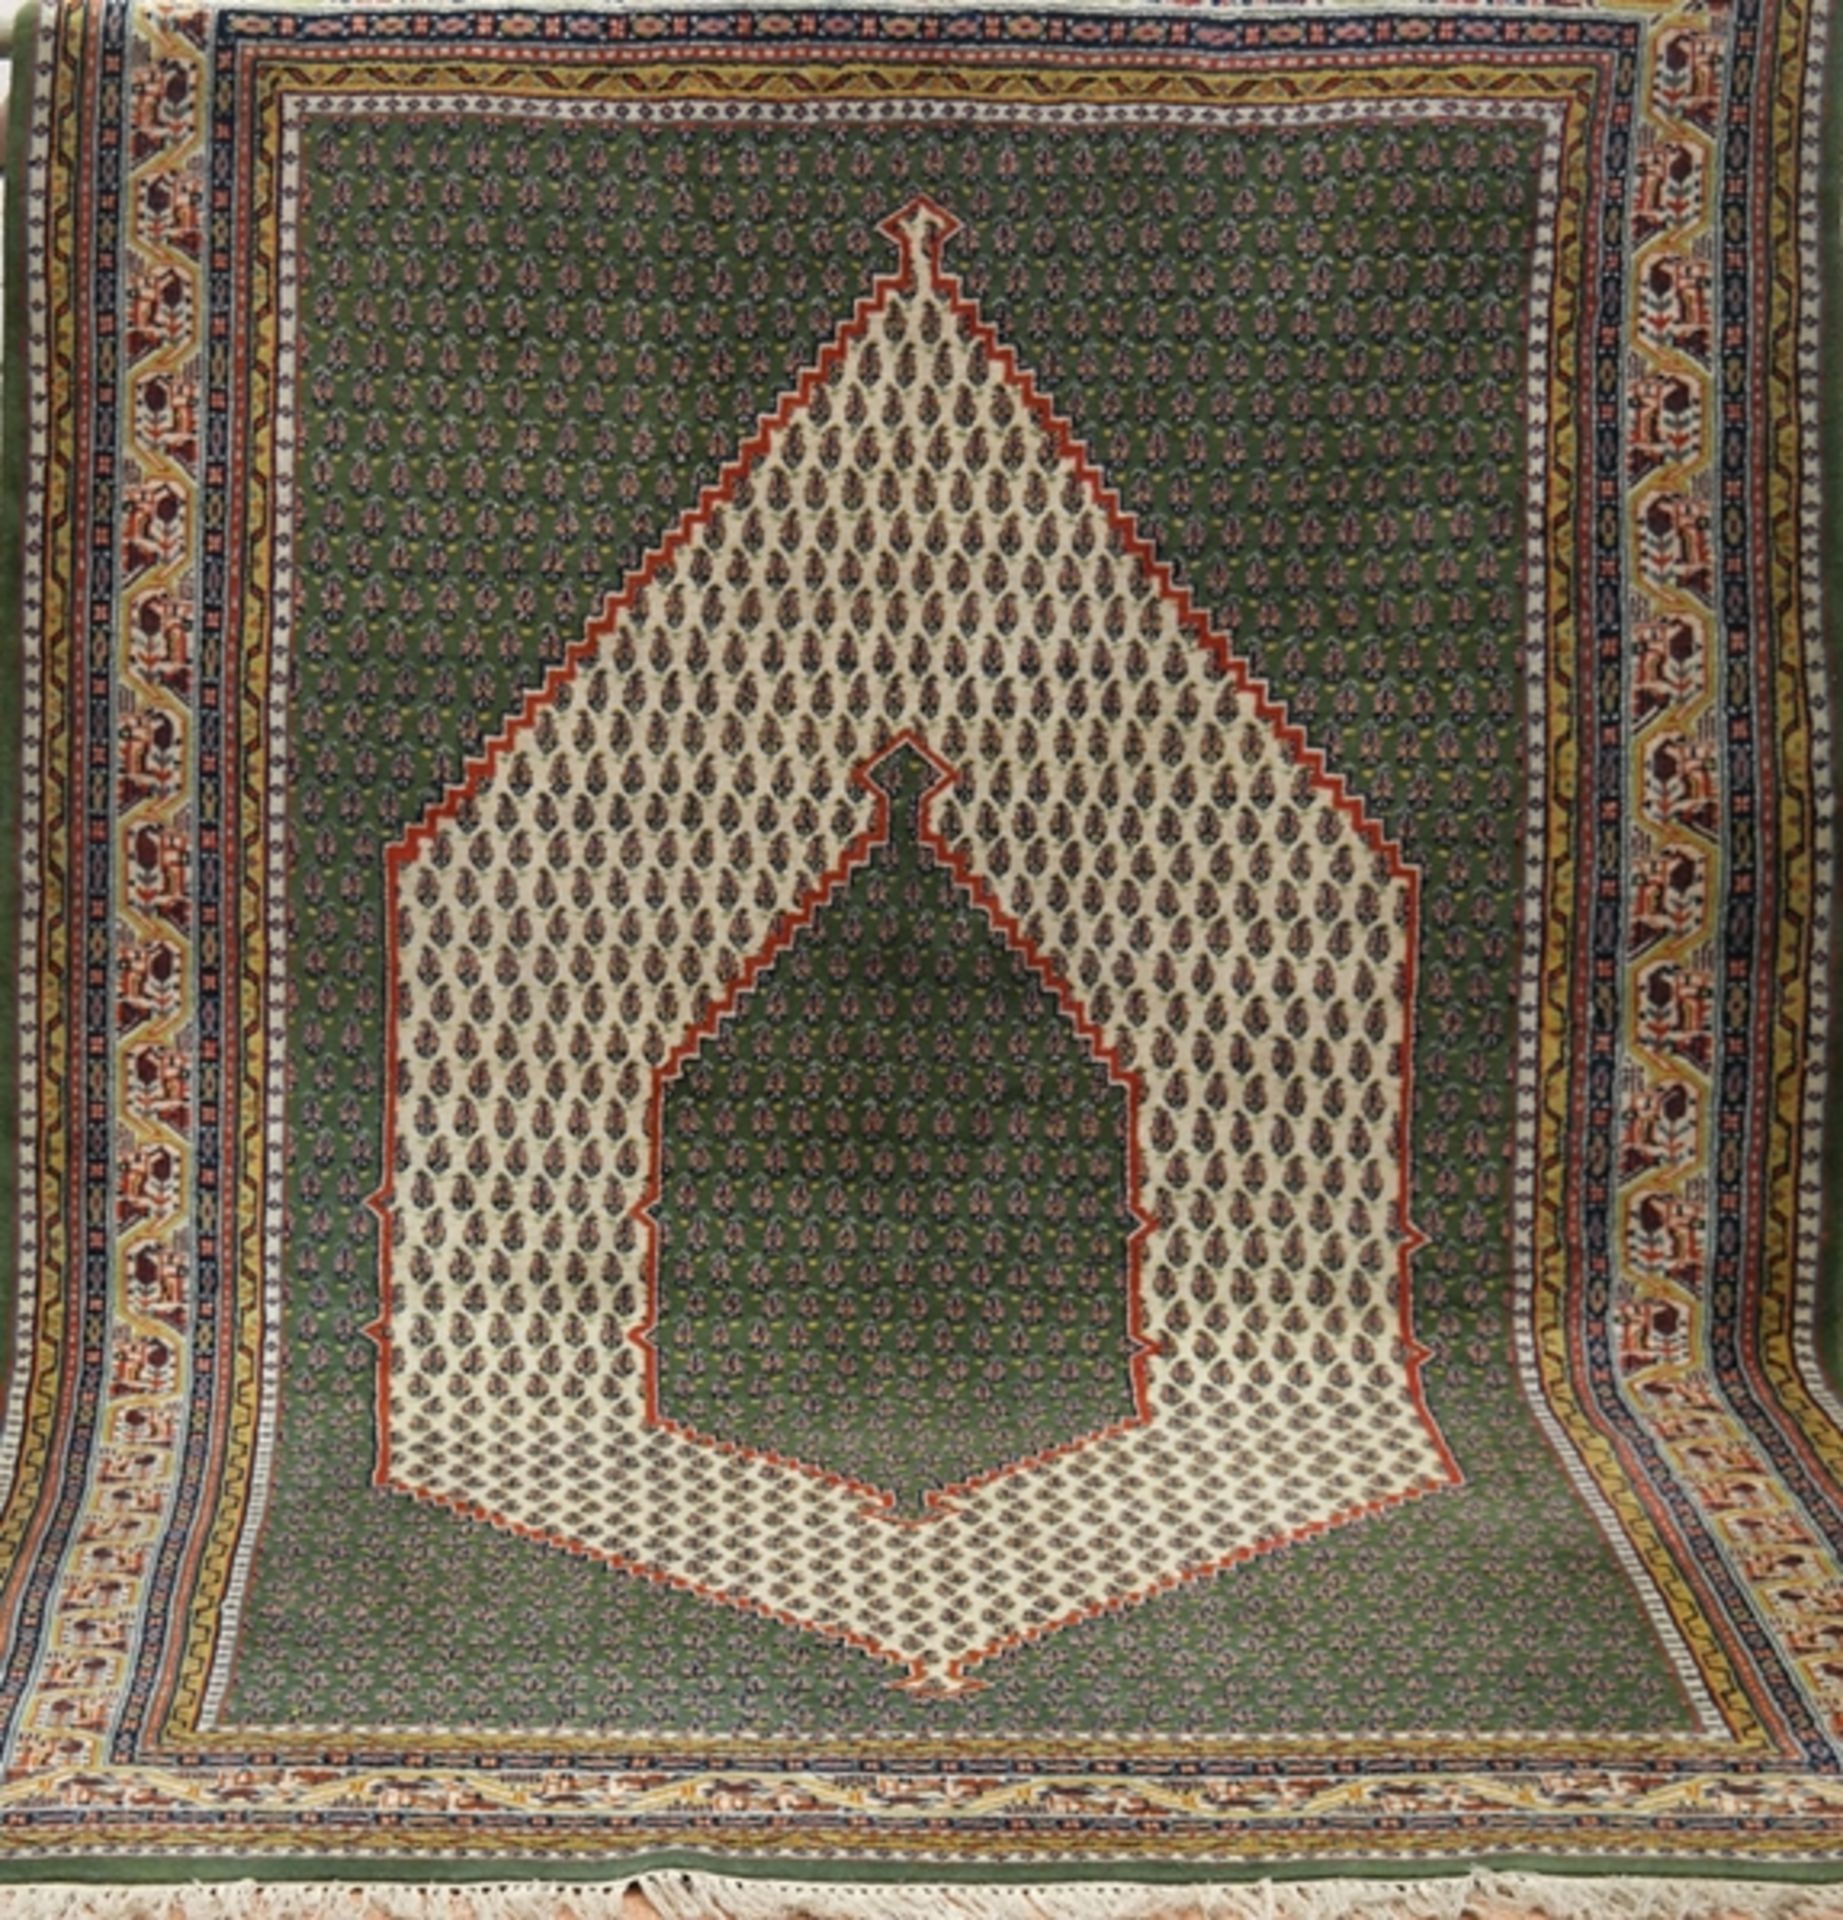 Orientteppich, um 1965, grüngrundig mit durchgehendem Muster, guter Zustand, 200x300 cm